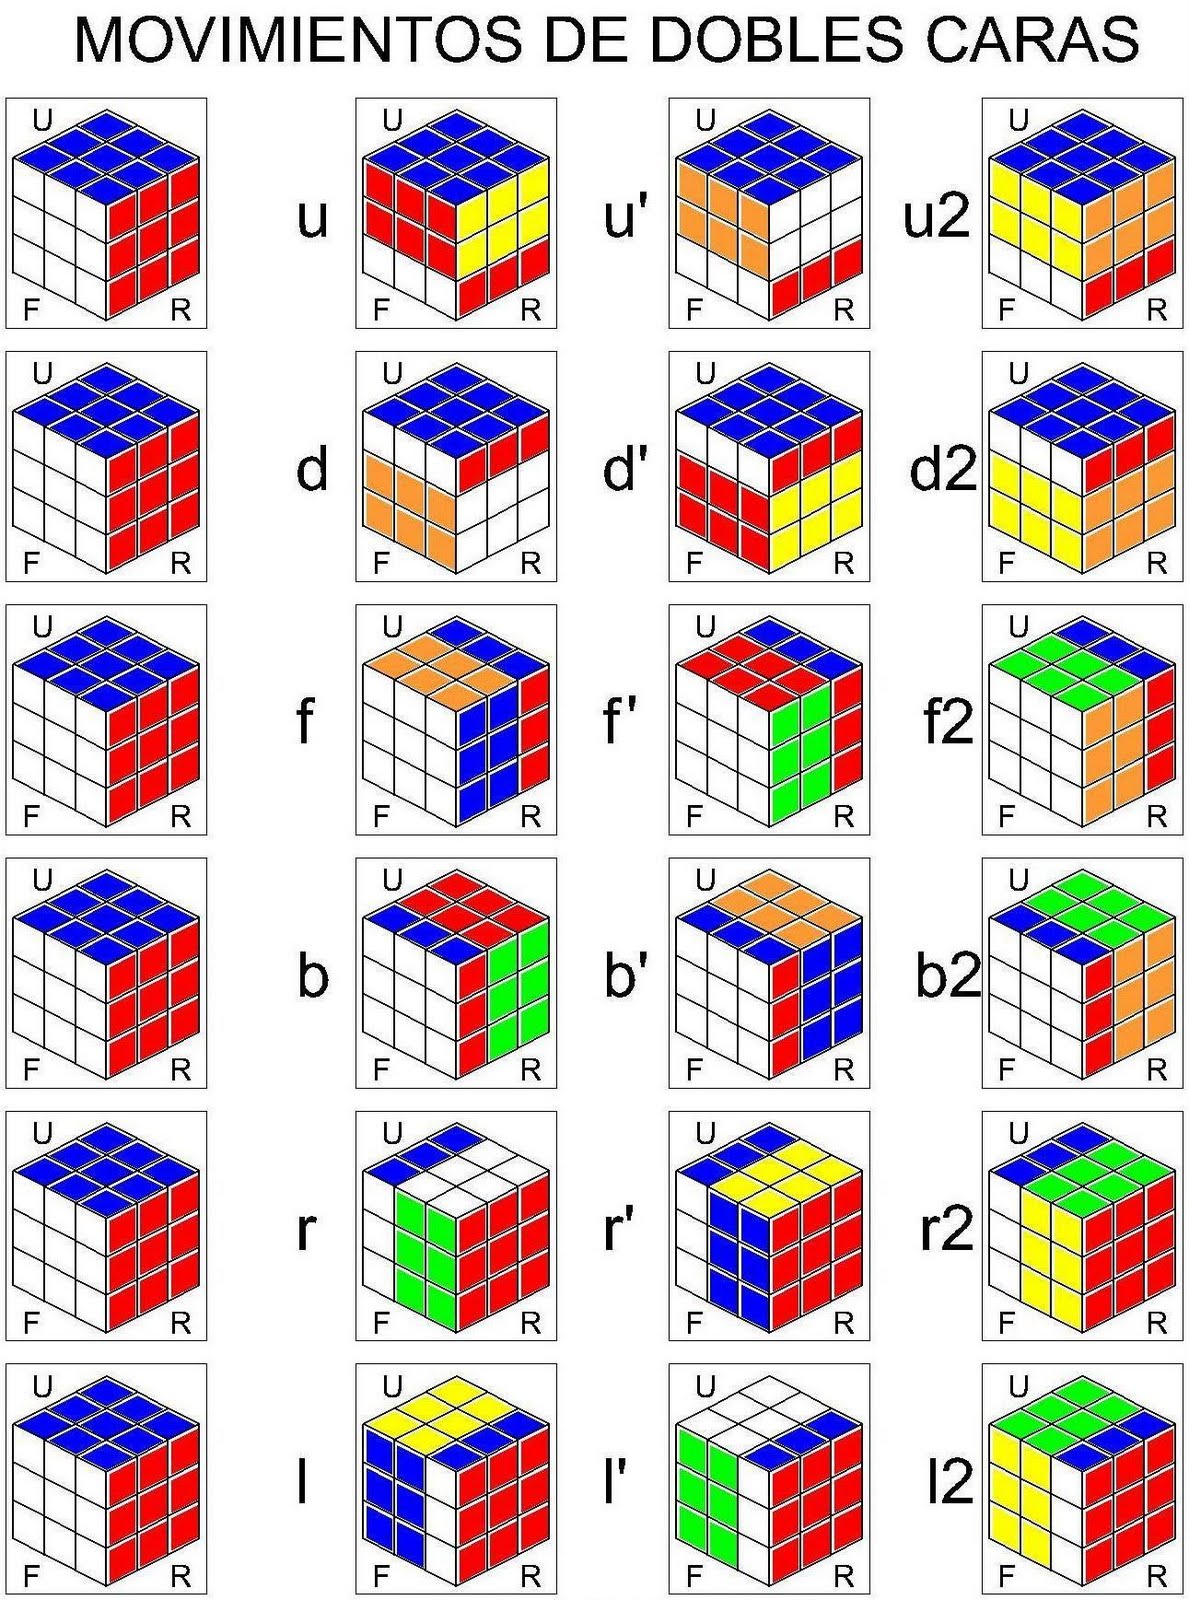 Алгоритм кубик рубик 3x3